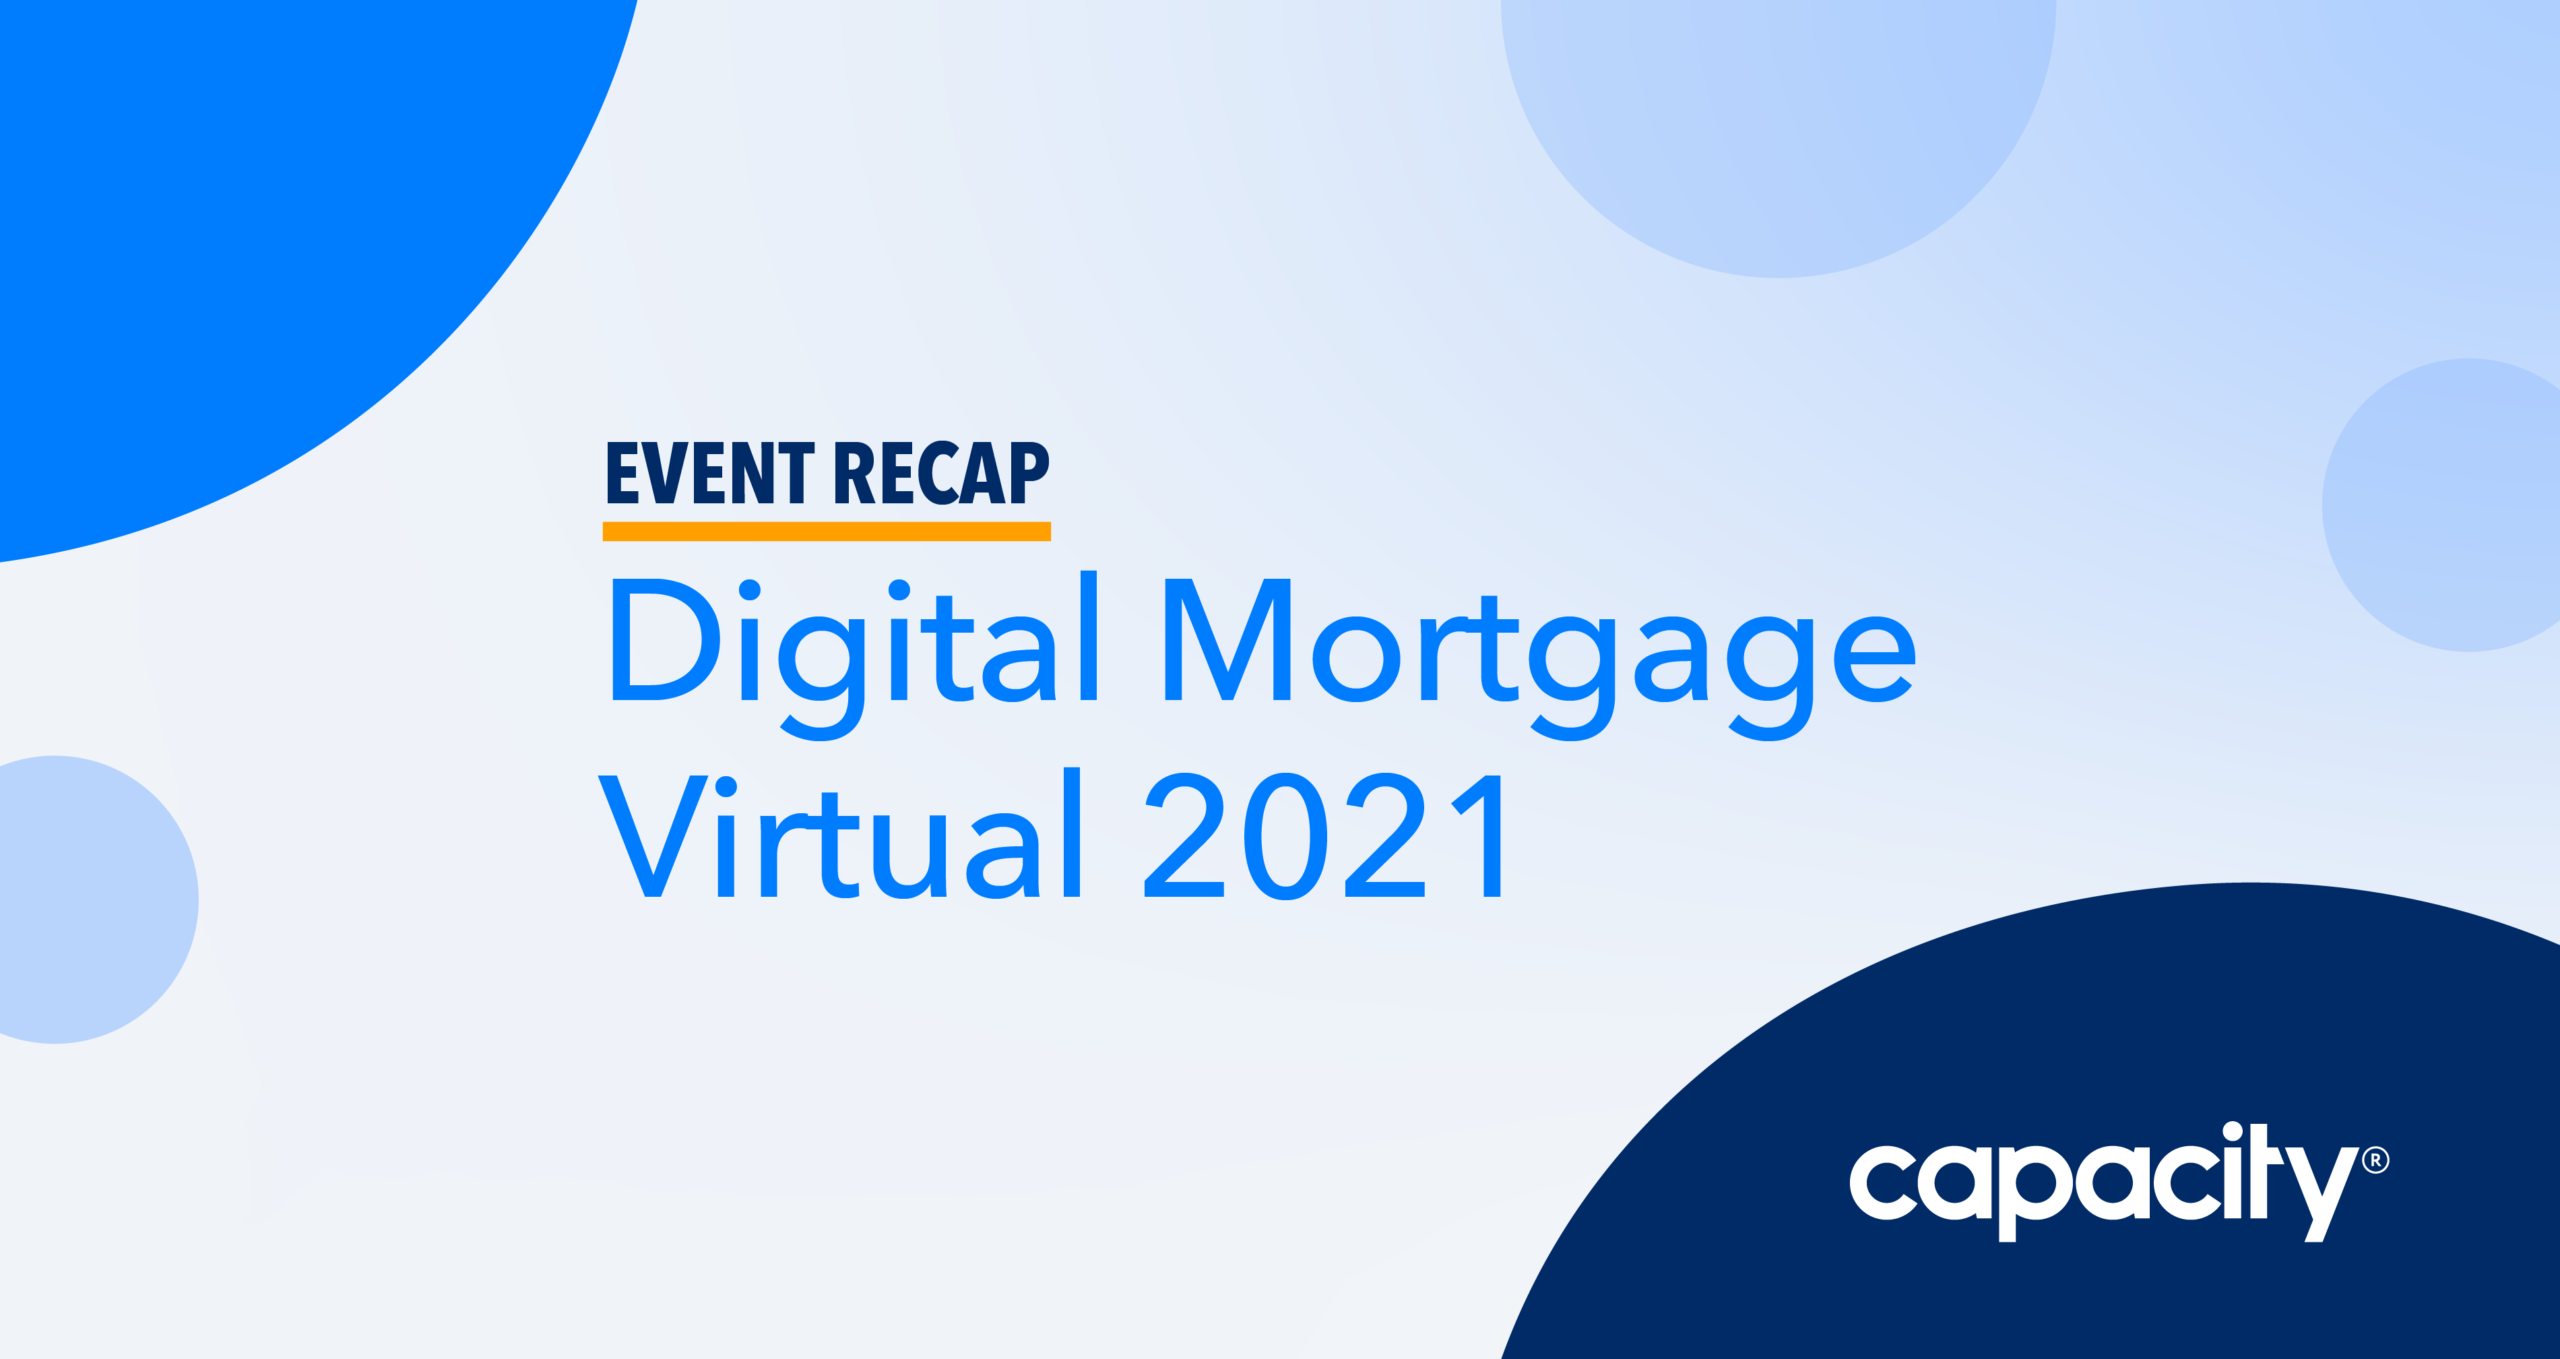 Digital Mortgage 2021 Event Recap Image